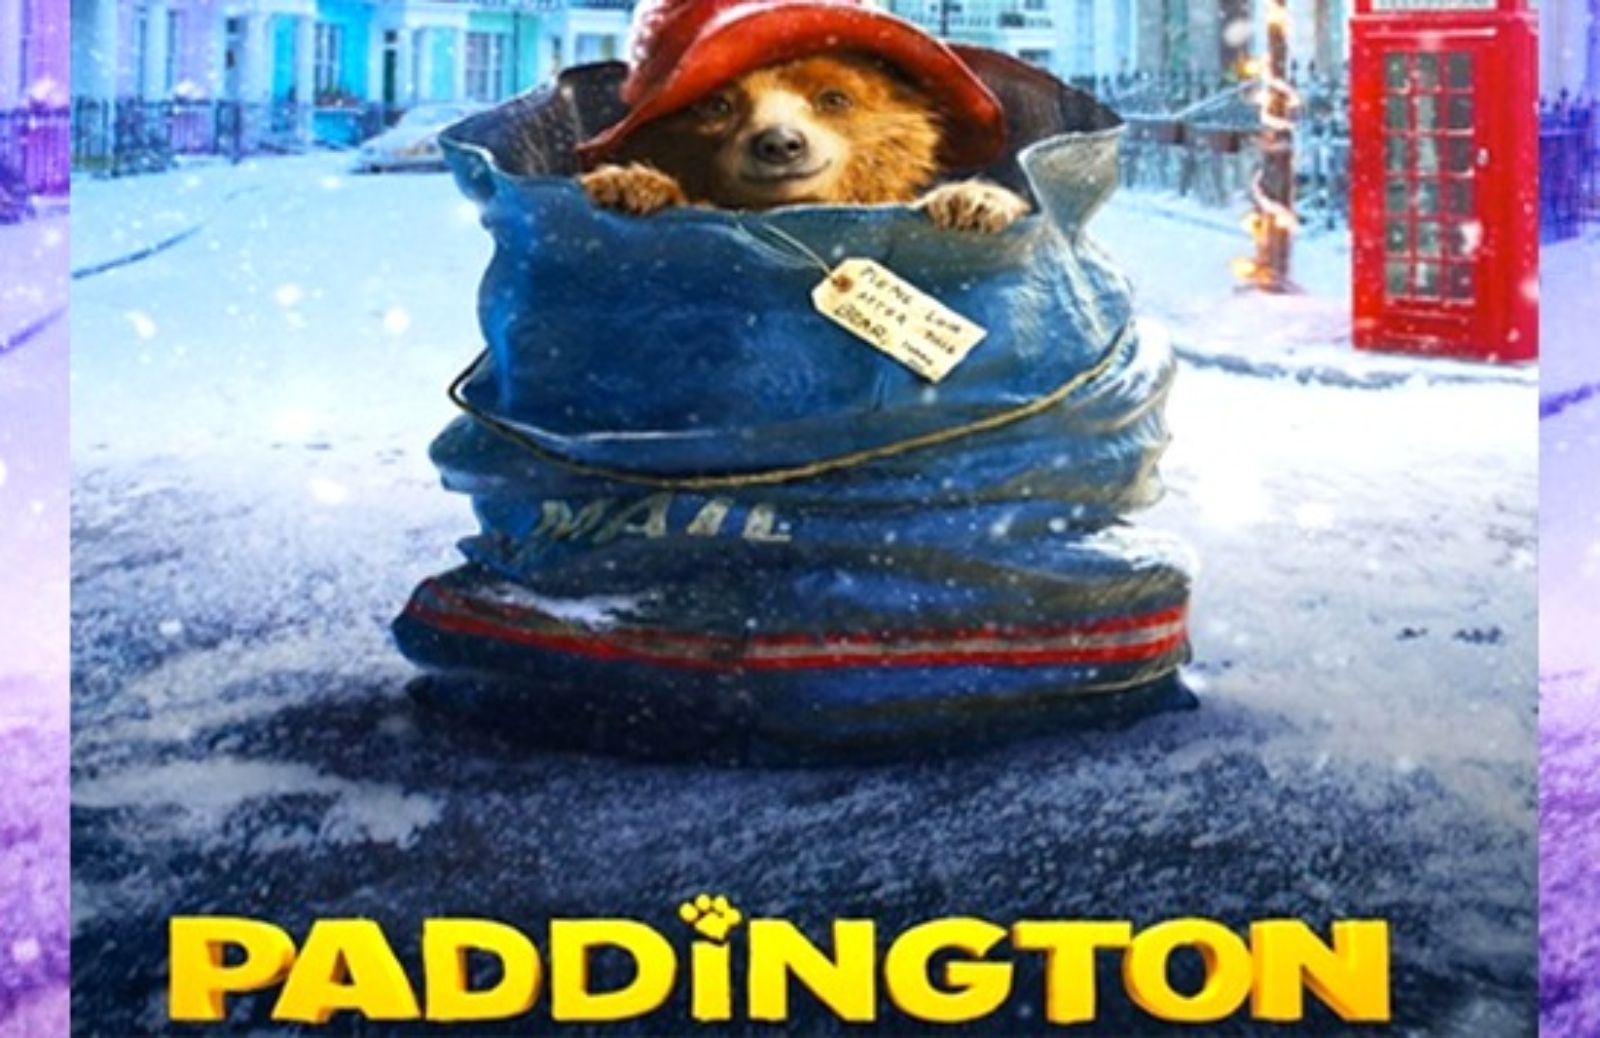 Natale al cinema con l'Orsetto Paddington